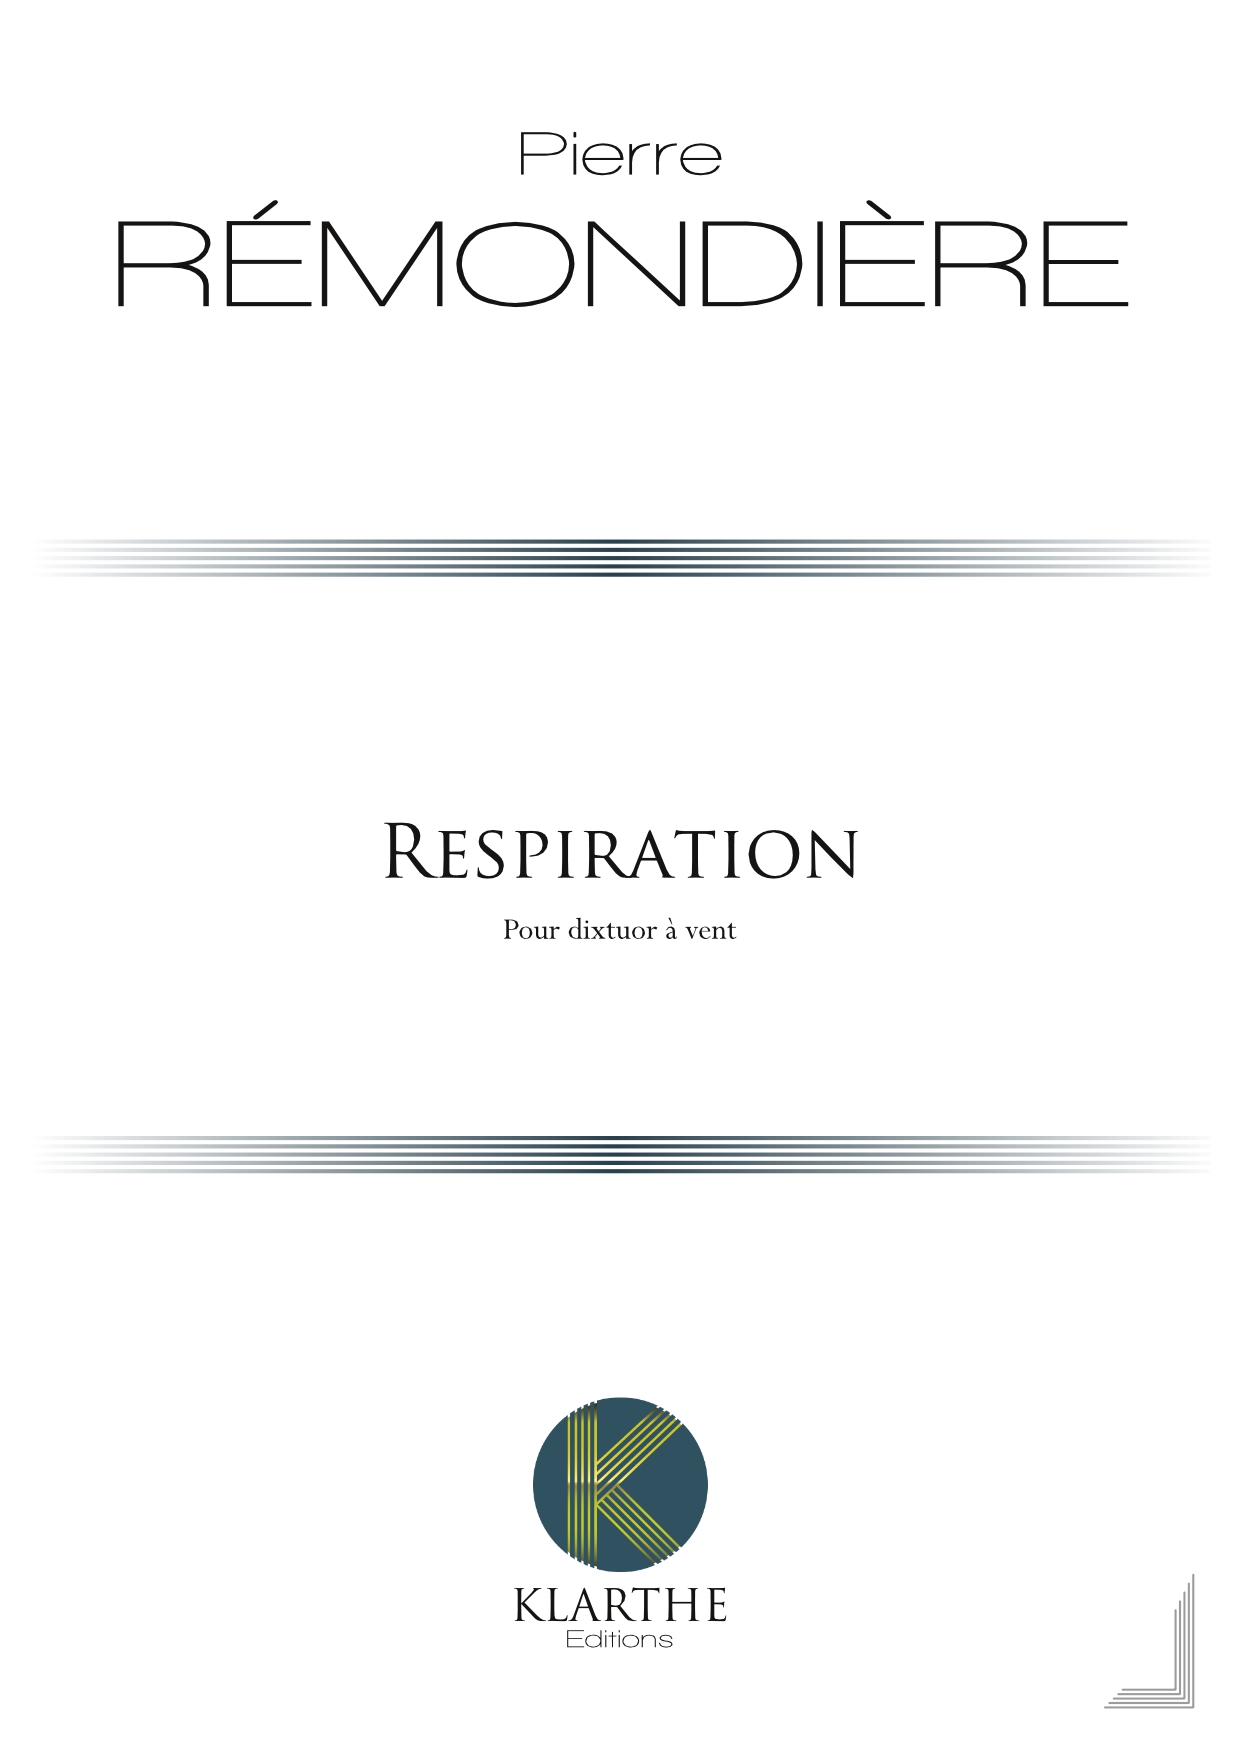 Respiration (REMONDIERE PIERRE)